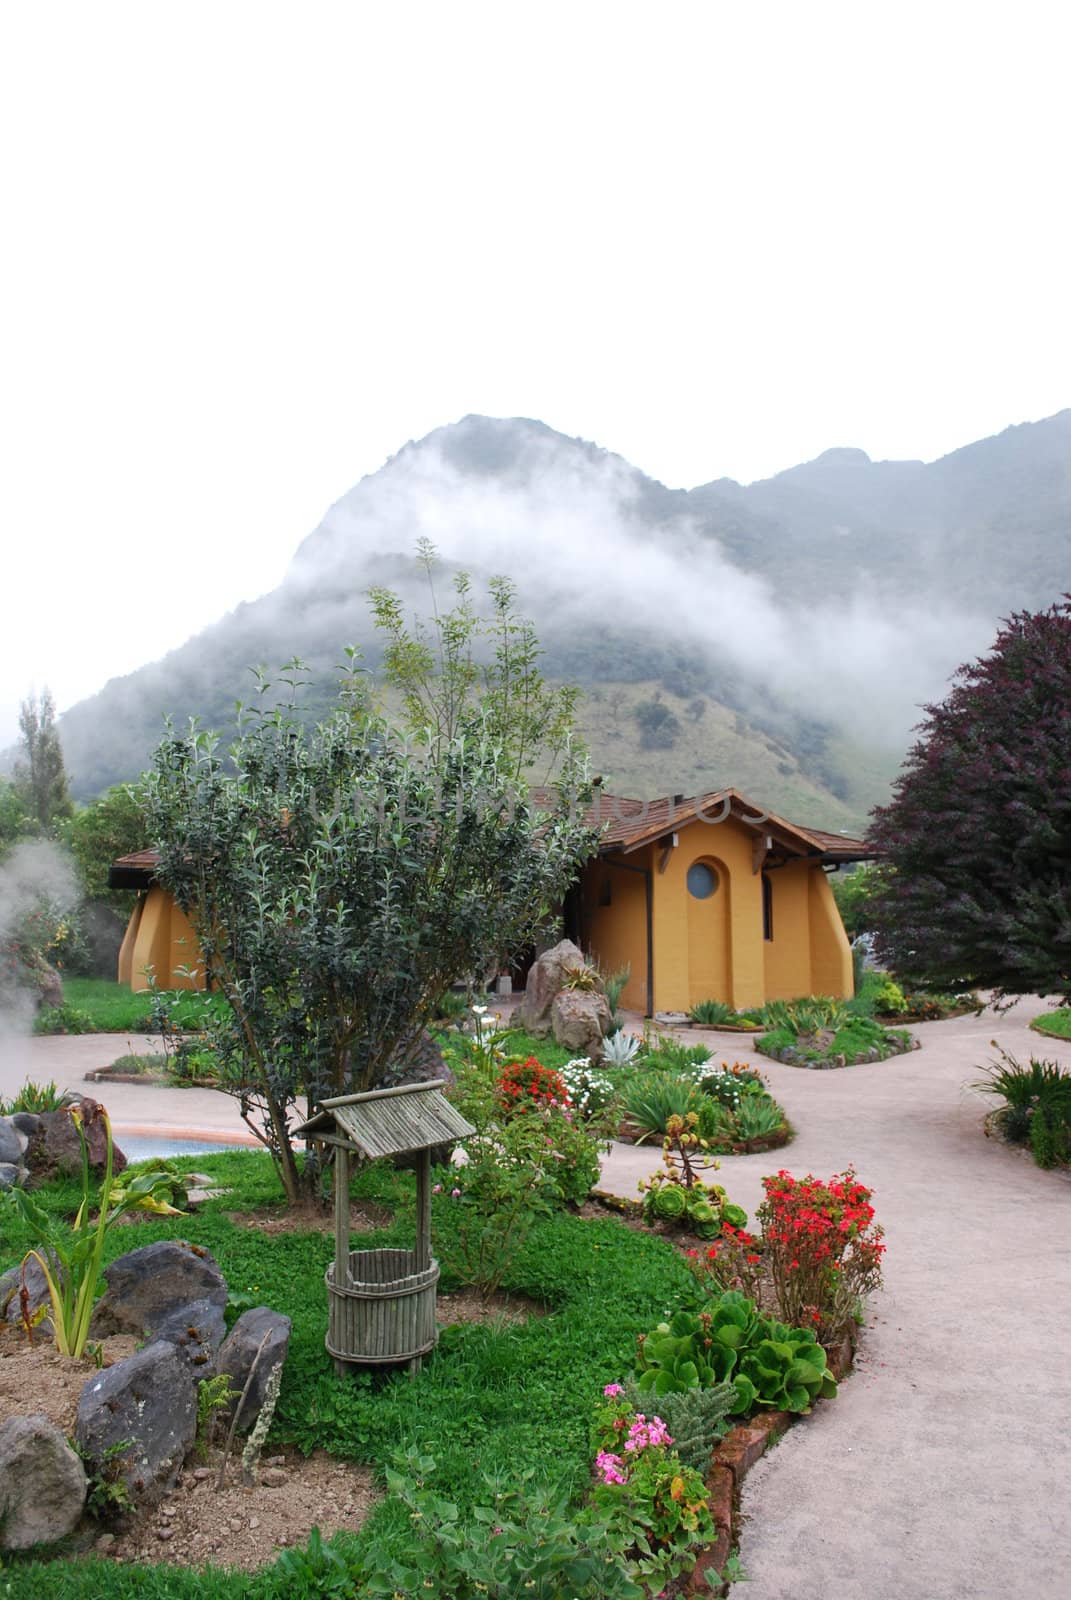 A hot springs resort in the mountains at Papallacta, Ecuador.